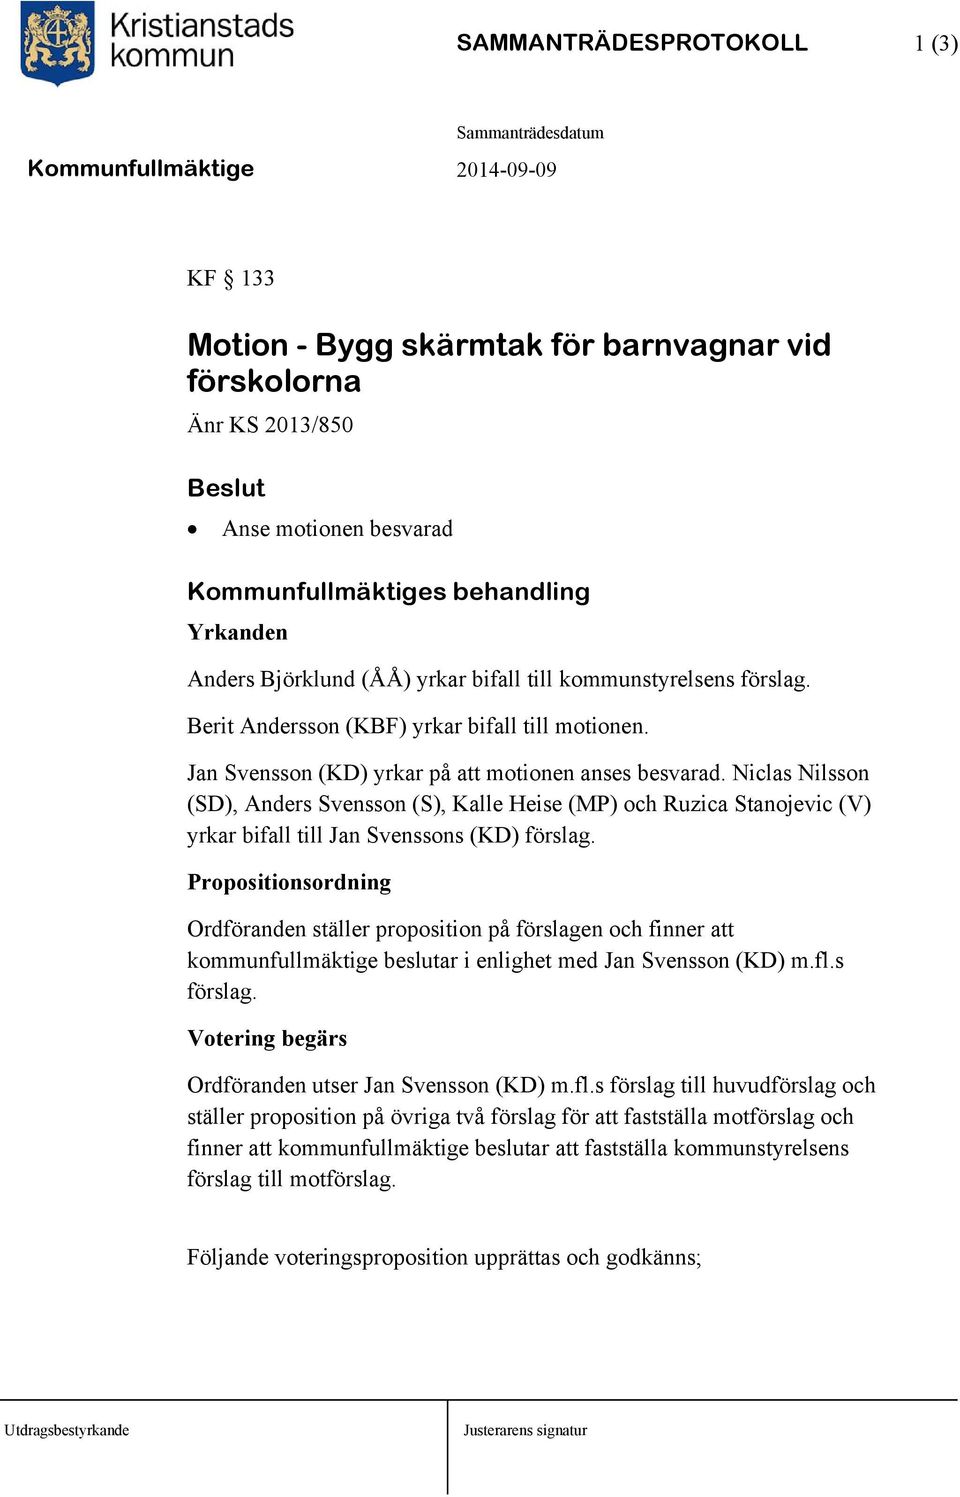 Niclas Nilsson (SD), Anders Svensson (S), Kalle Heise (MP) och Ruzica Stanojevic (V) yrkar bifall till Jan Svenssons (KD) förslag.